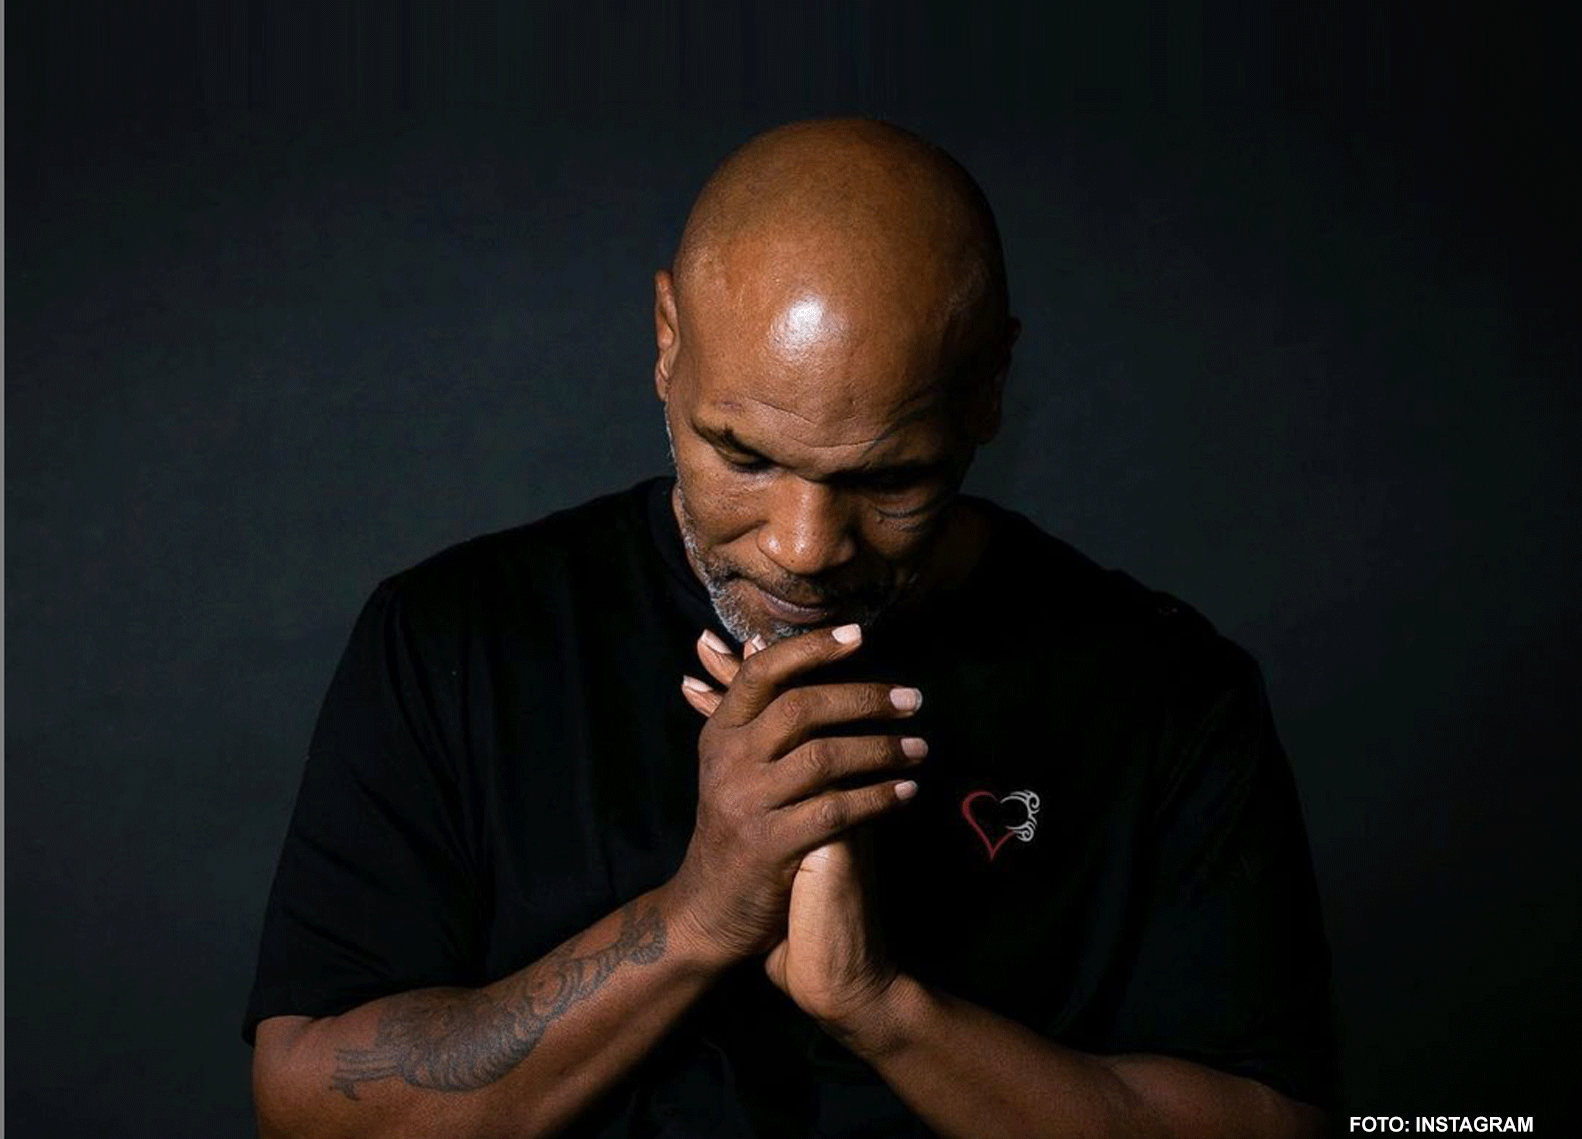 Mike Tyson gebruikte een nep penis tijdens zijn boks carrière